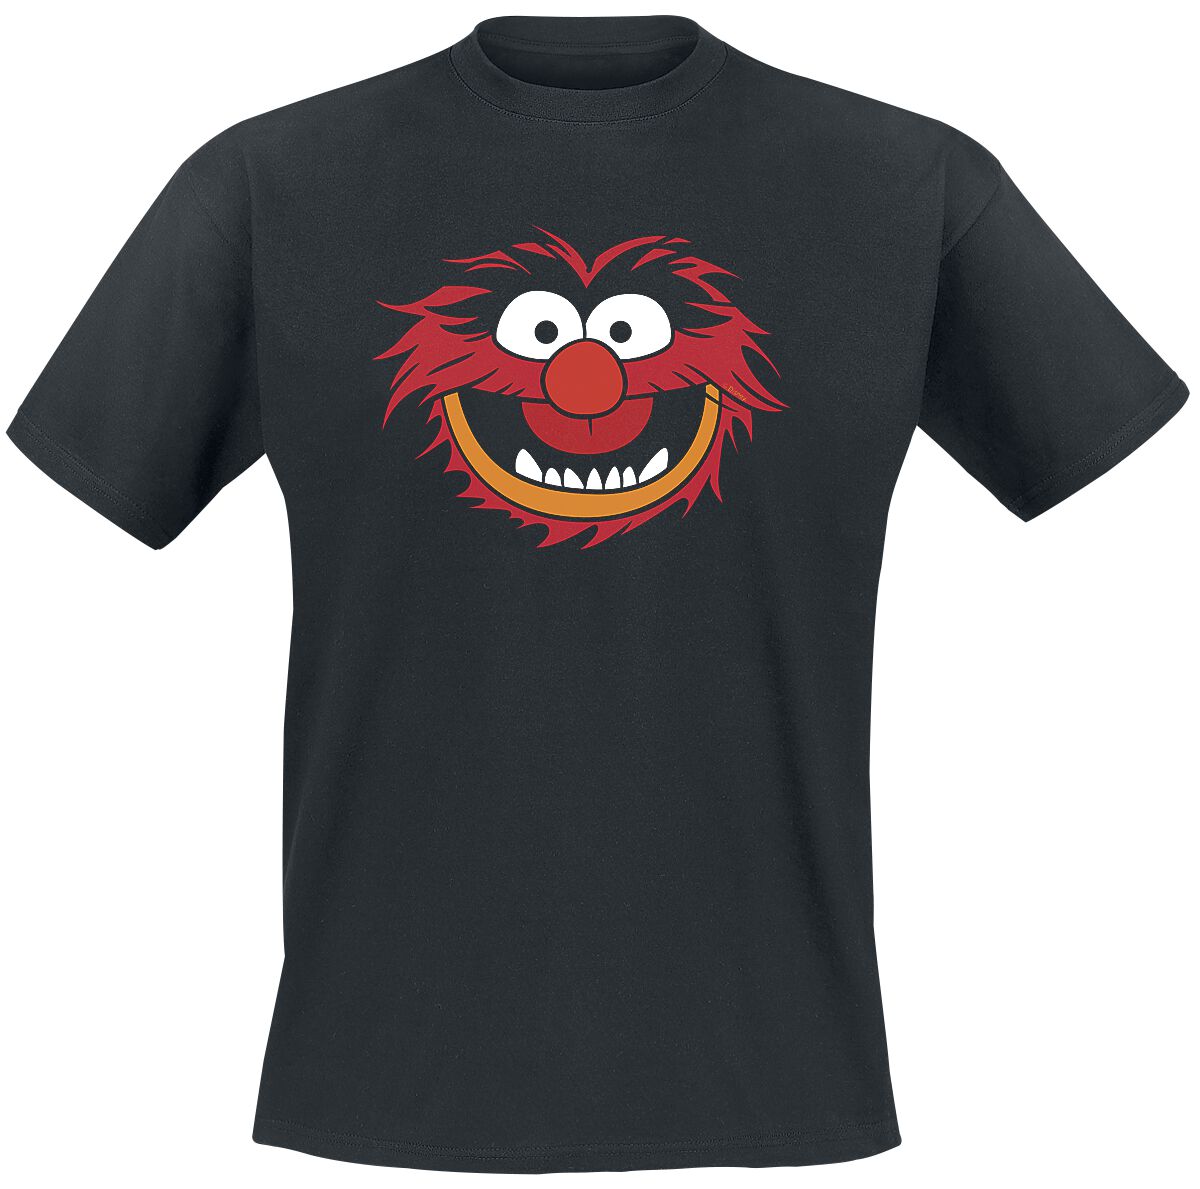 Die Muppets Animal - Gesicht T-Shirt schwarz in S